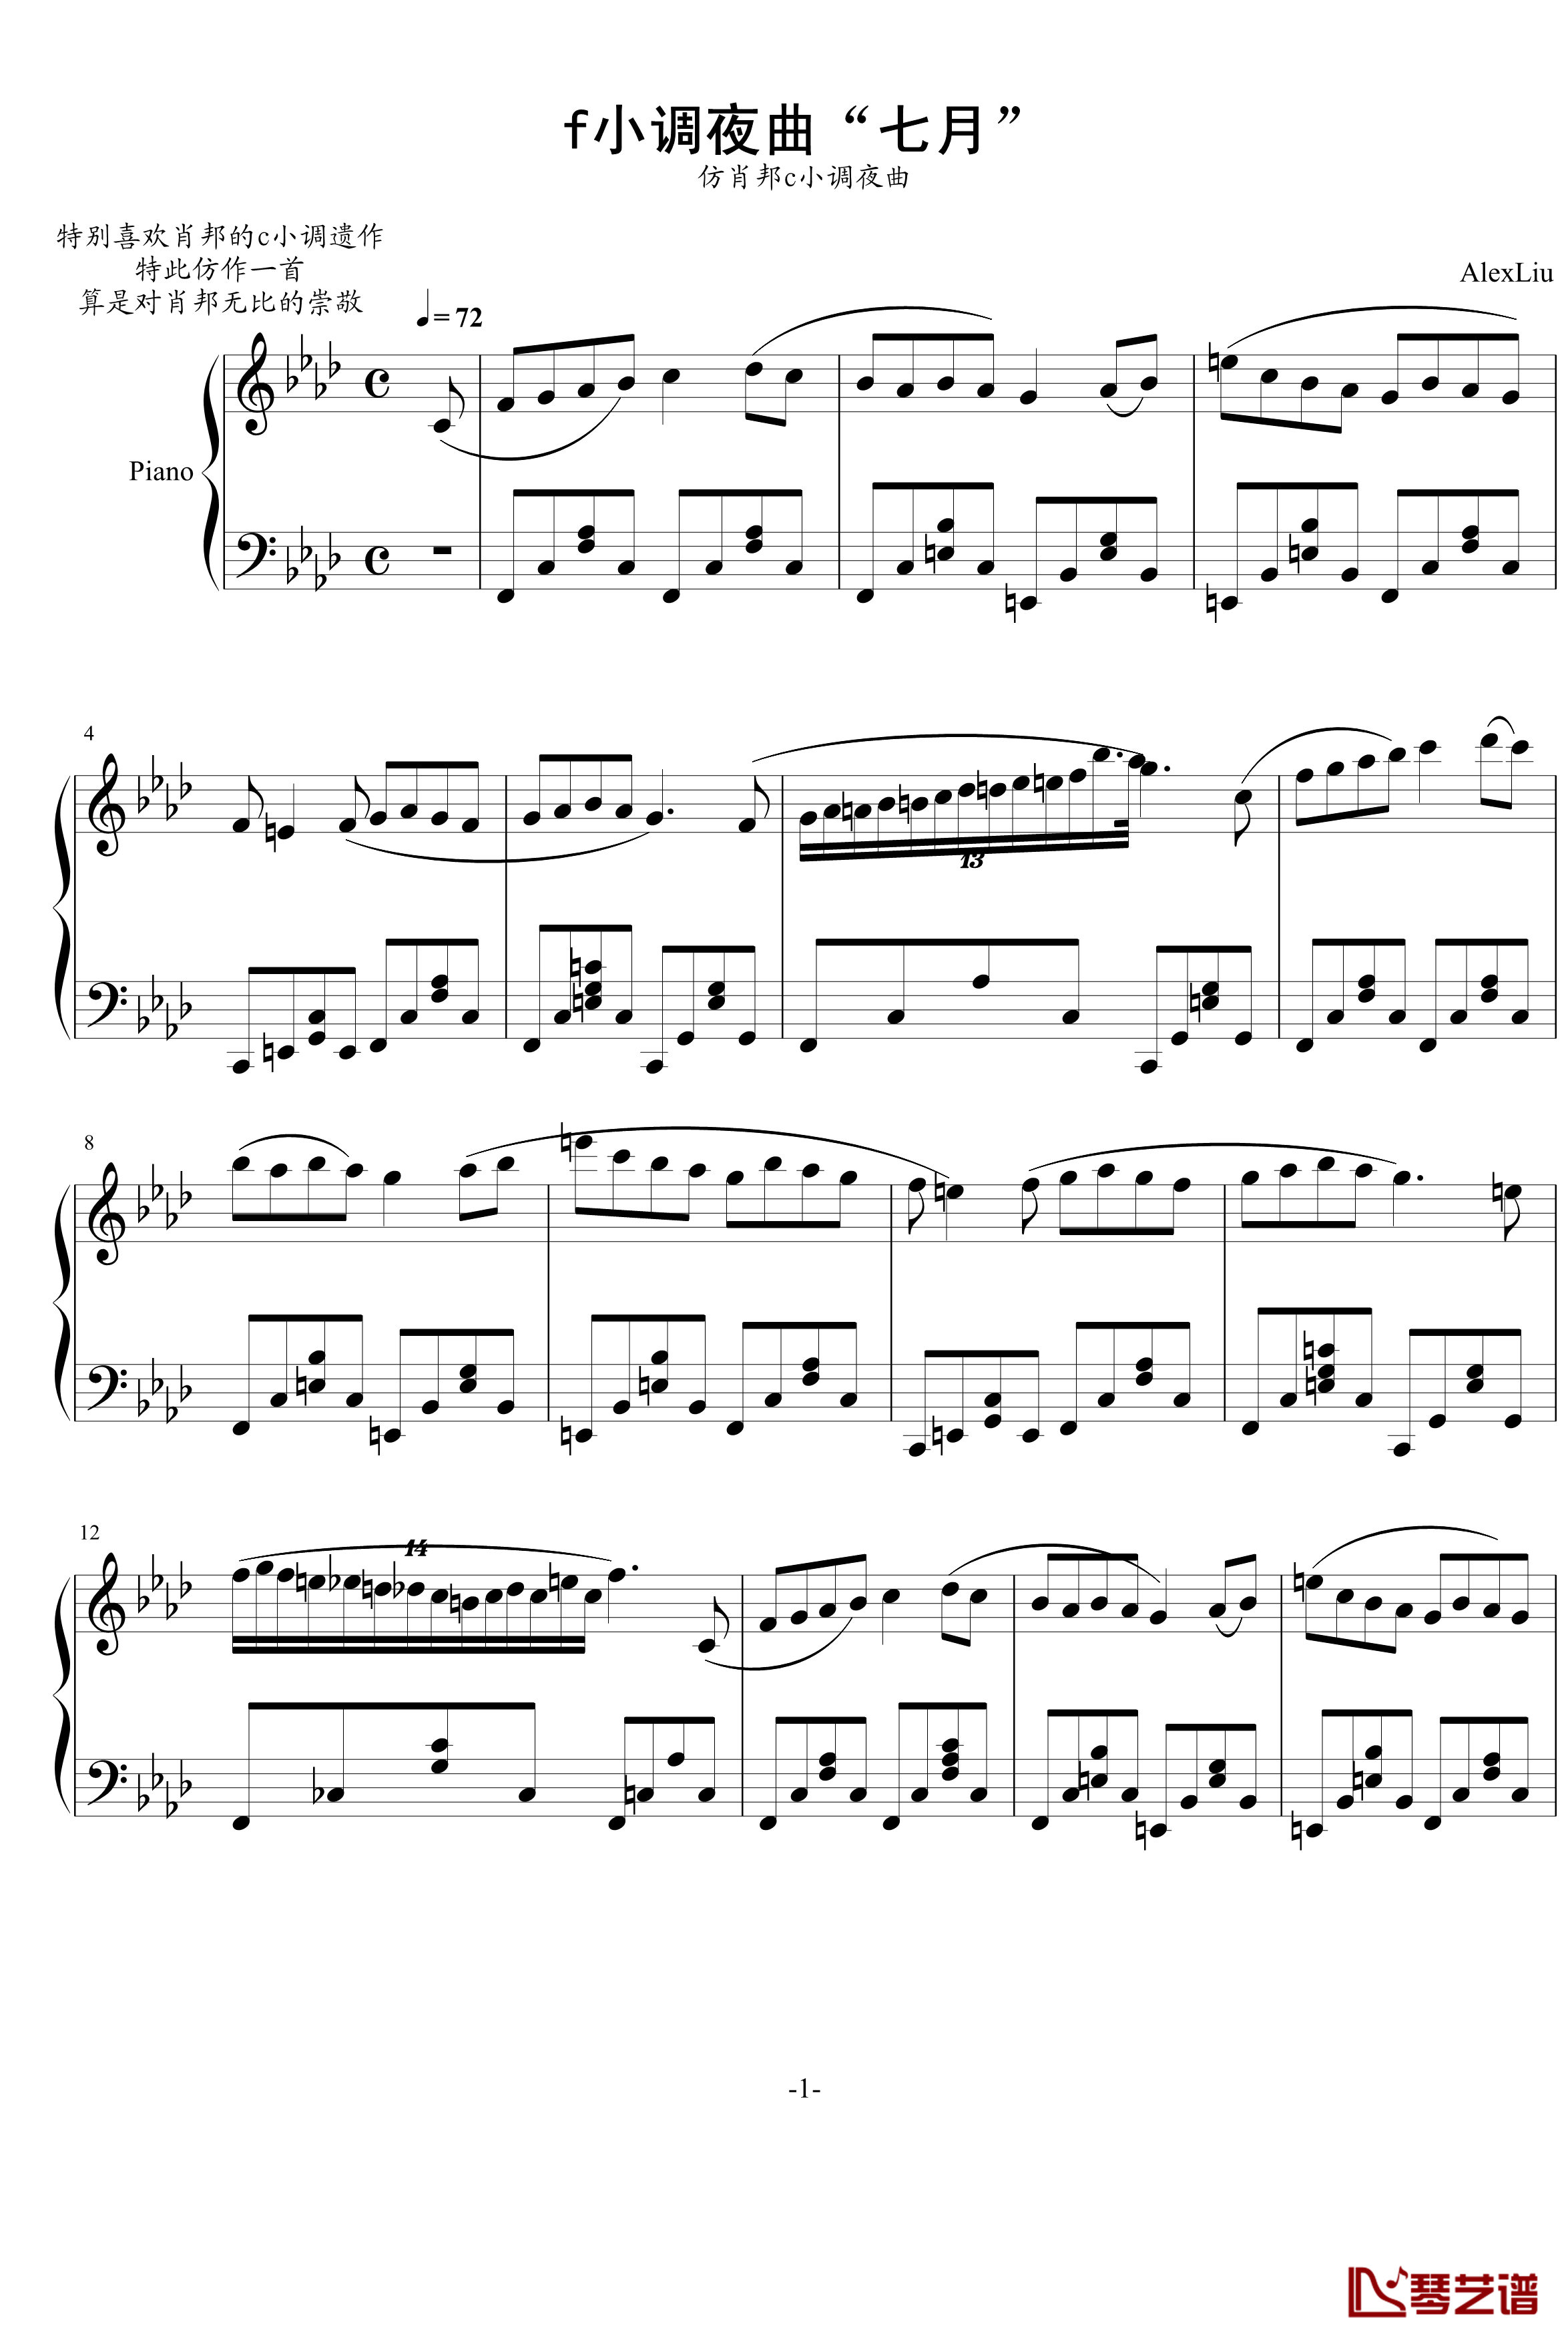 f小调夜曲钢琴谱-AlexLiu1